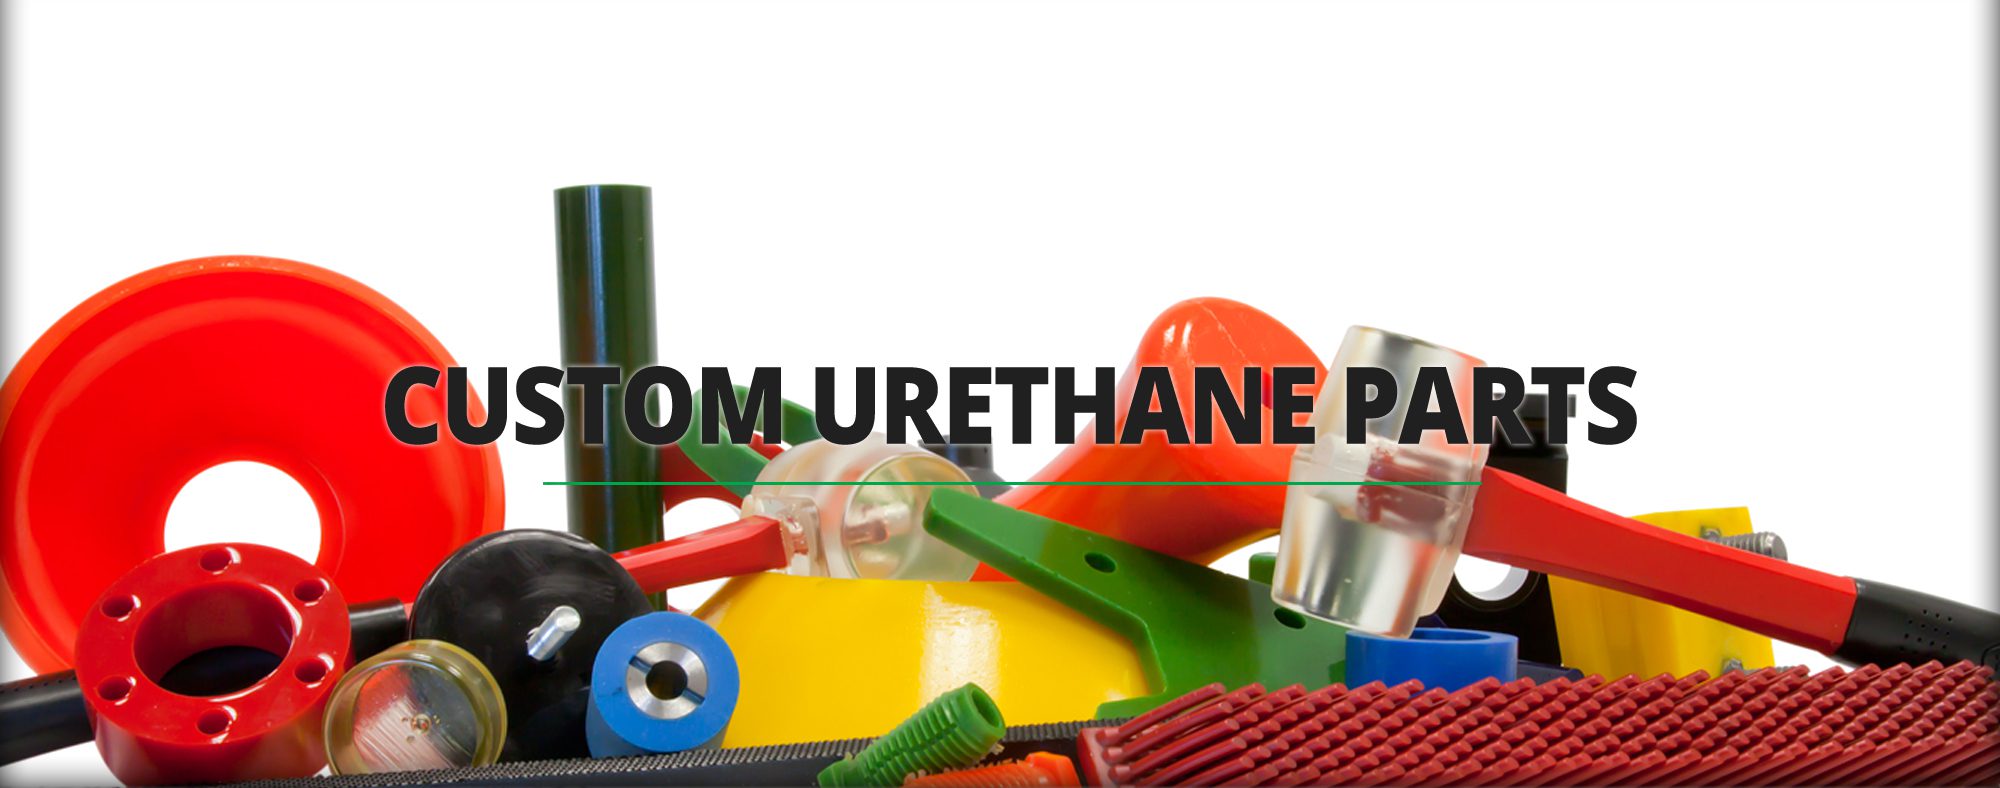 Custom Urethane Molding, Urethane Shaping and Urethane Prototyping